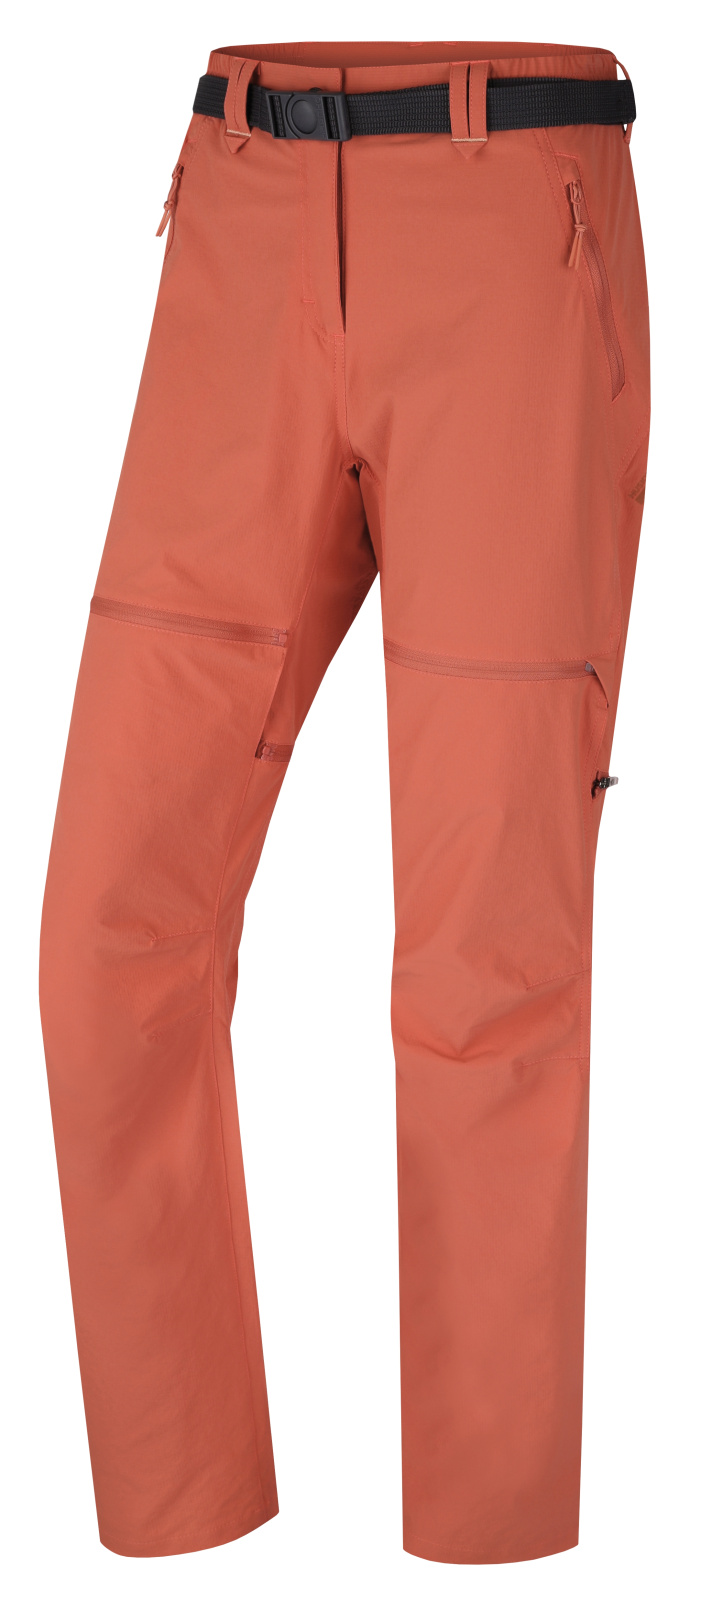 Husky Dámské outdoor kalhoty Pilon L faded orange Velikost: M dámské kalhoty